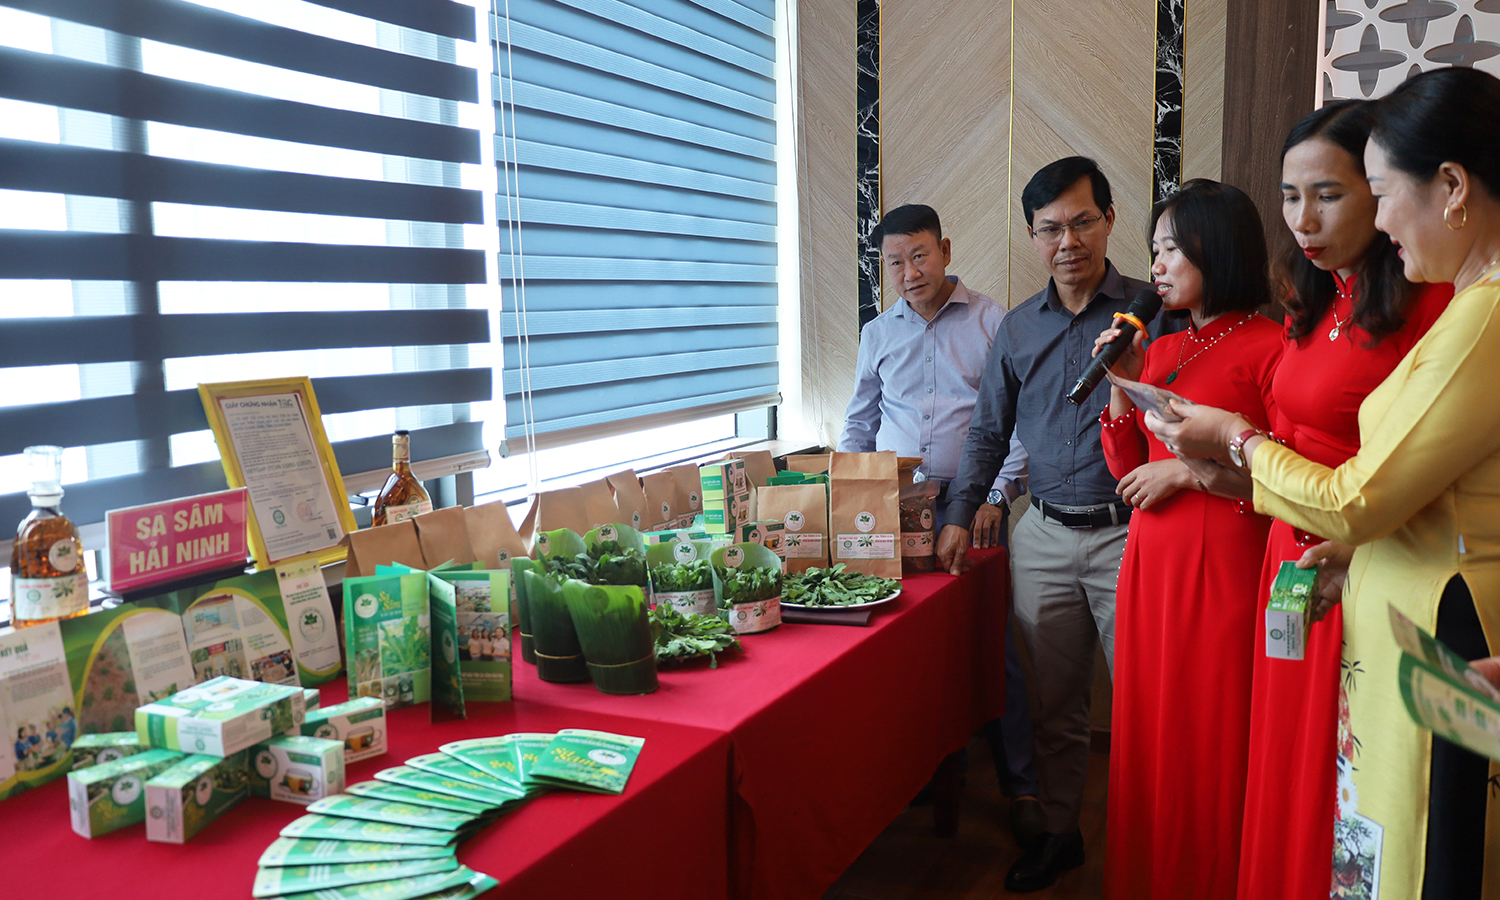 Tổng kết và giới thiệu sản phẩm dự án cây sa sâm bản địa trên vùng đất cát xã Hải Ninh